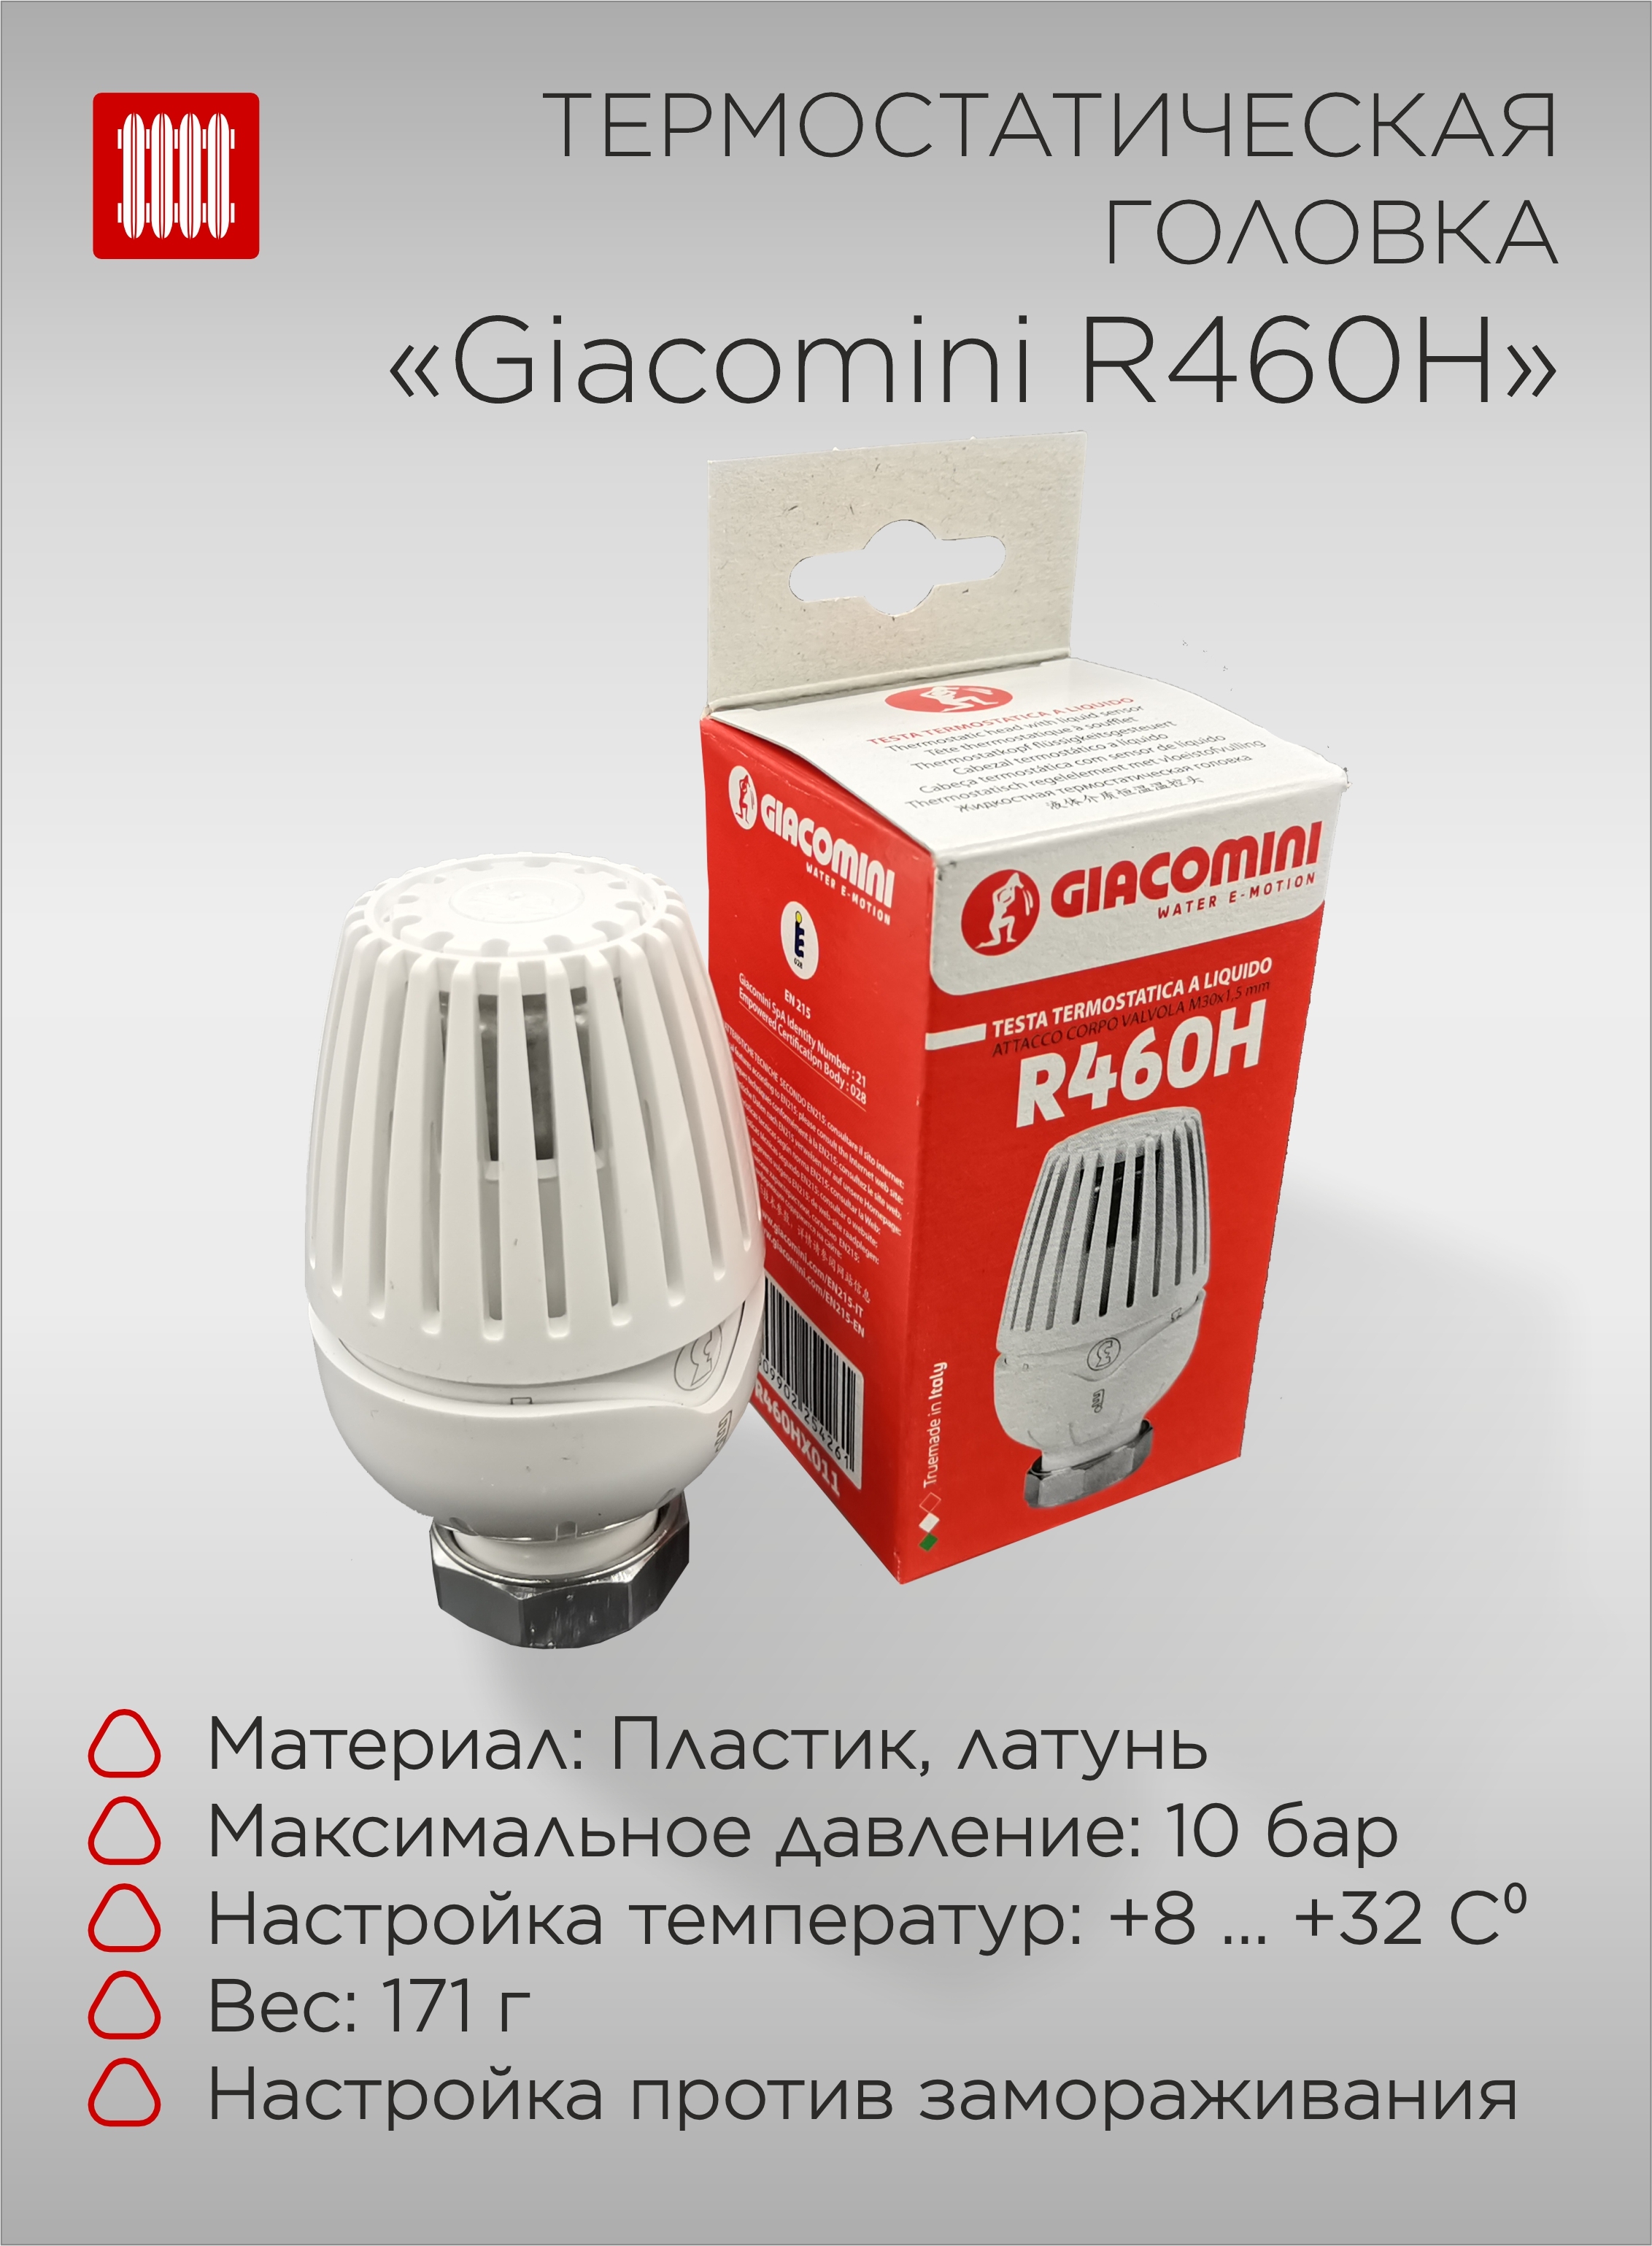 Giacomini R460